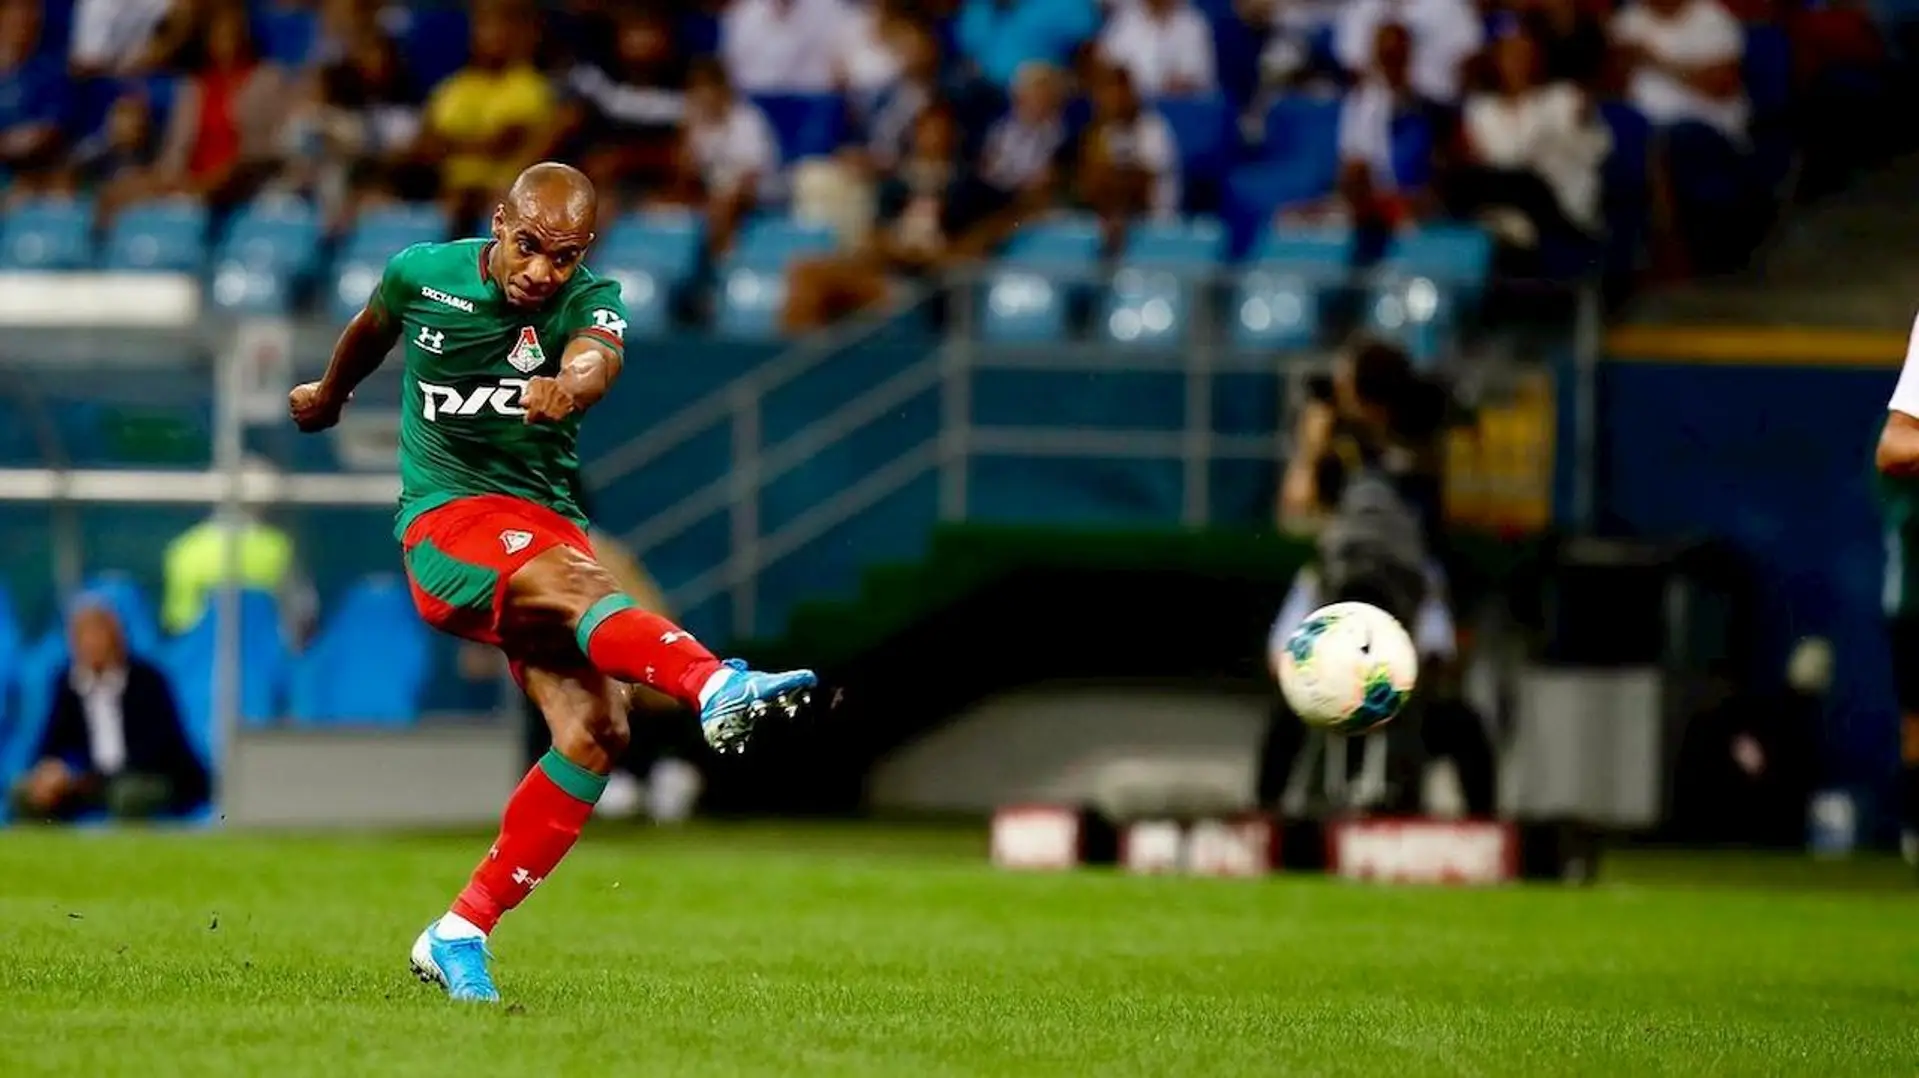 Joao Mario-Lokomotiv, niente riscatto ma il prestito del portoghese può essere prolungato